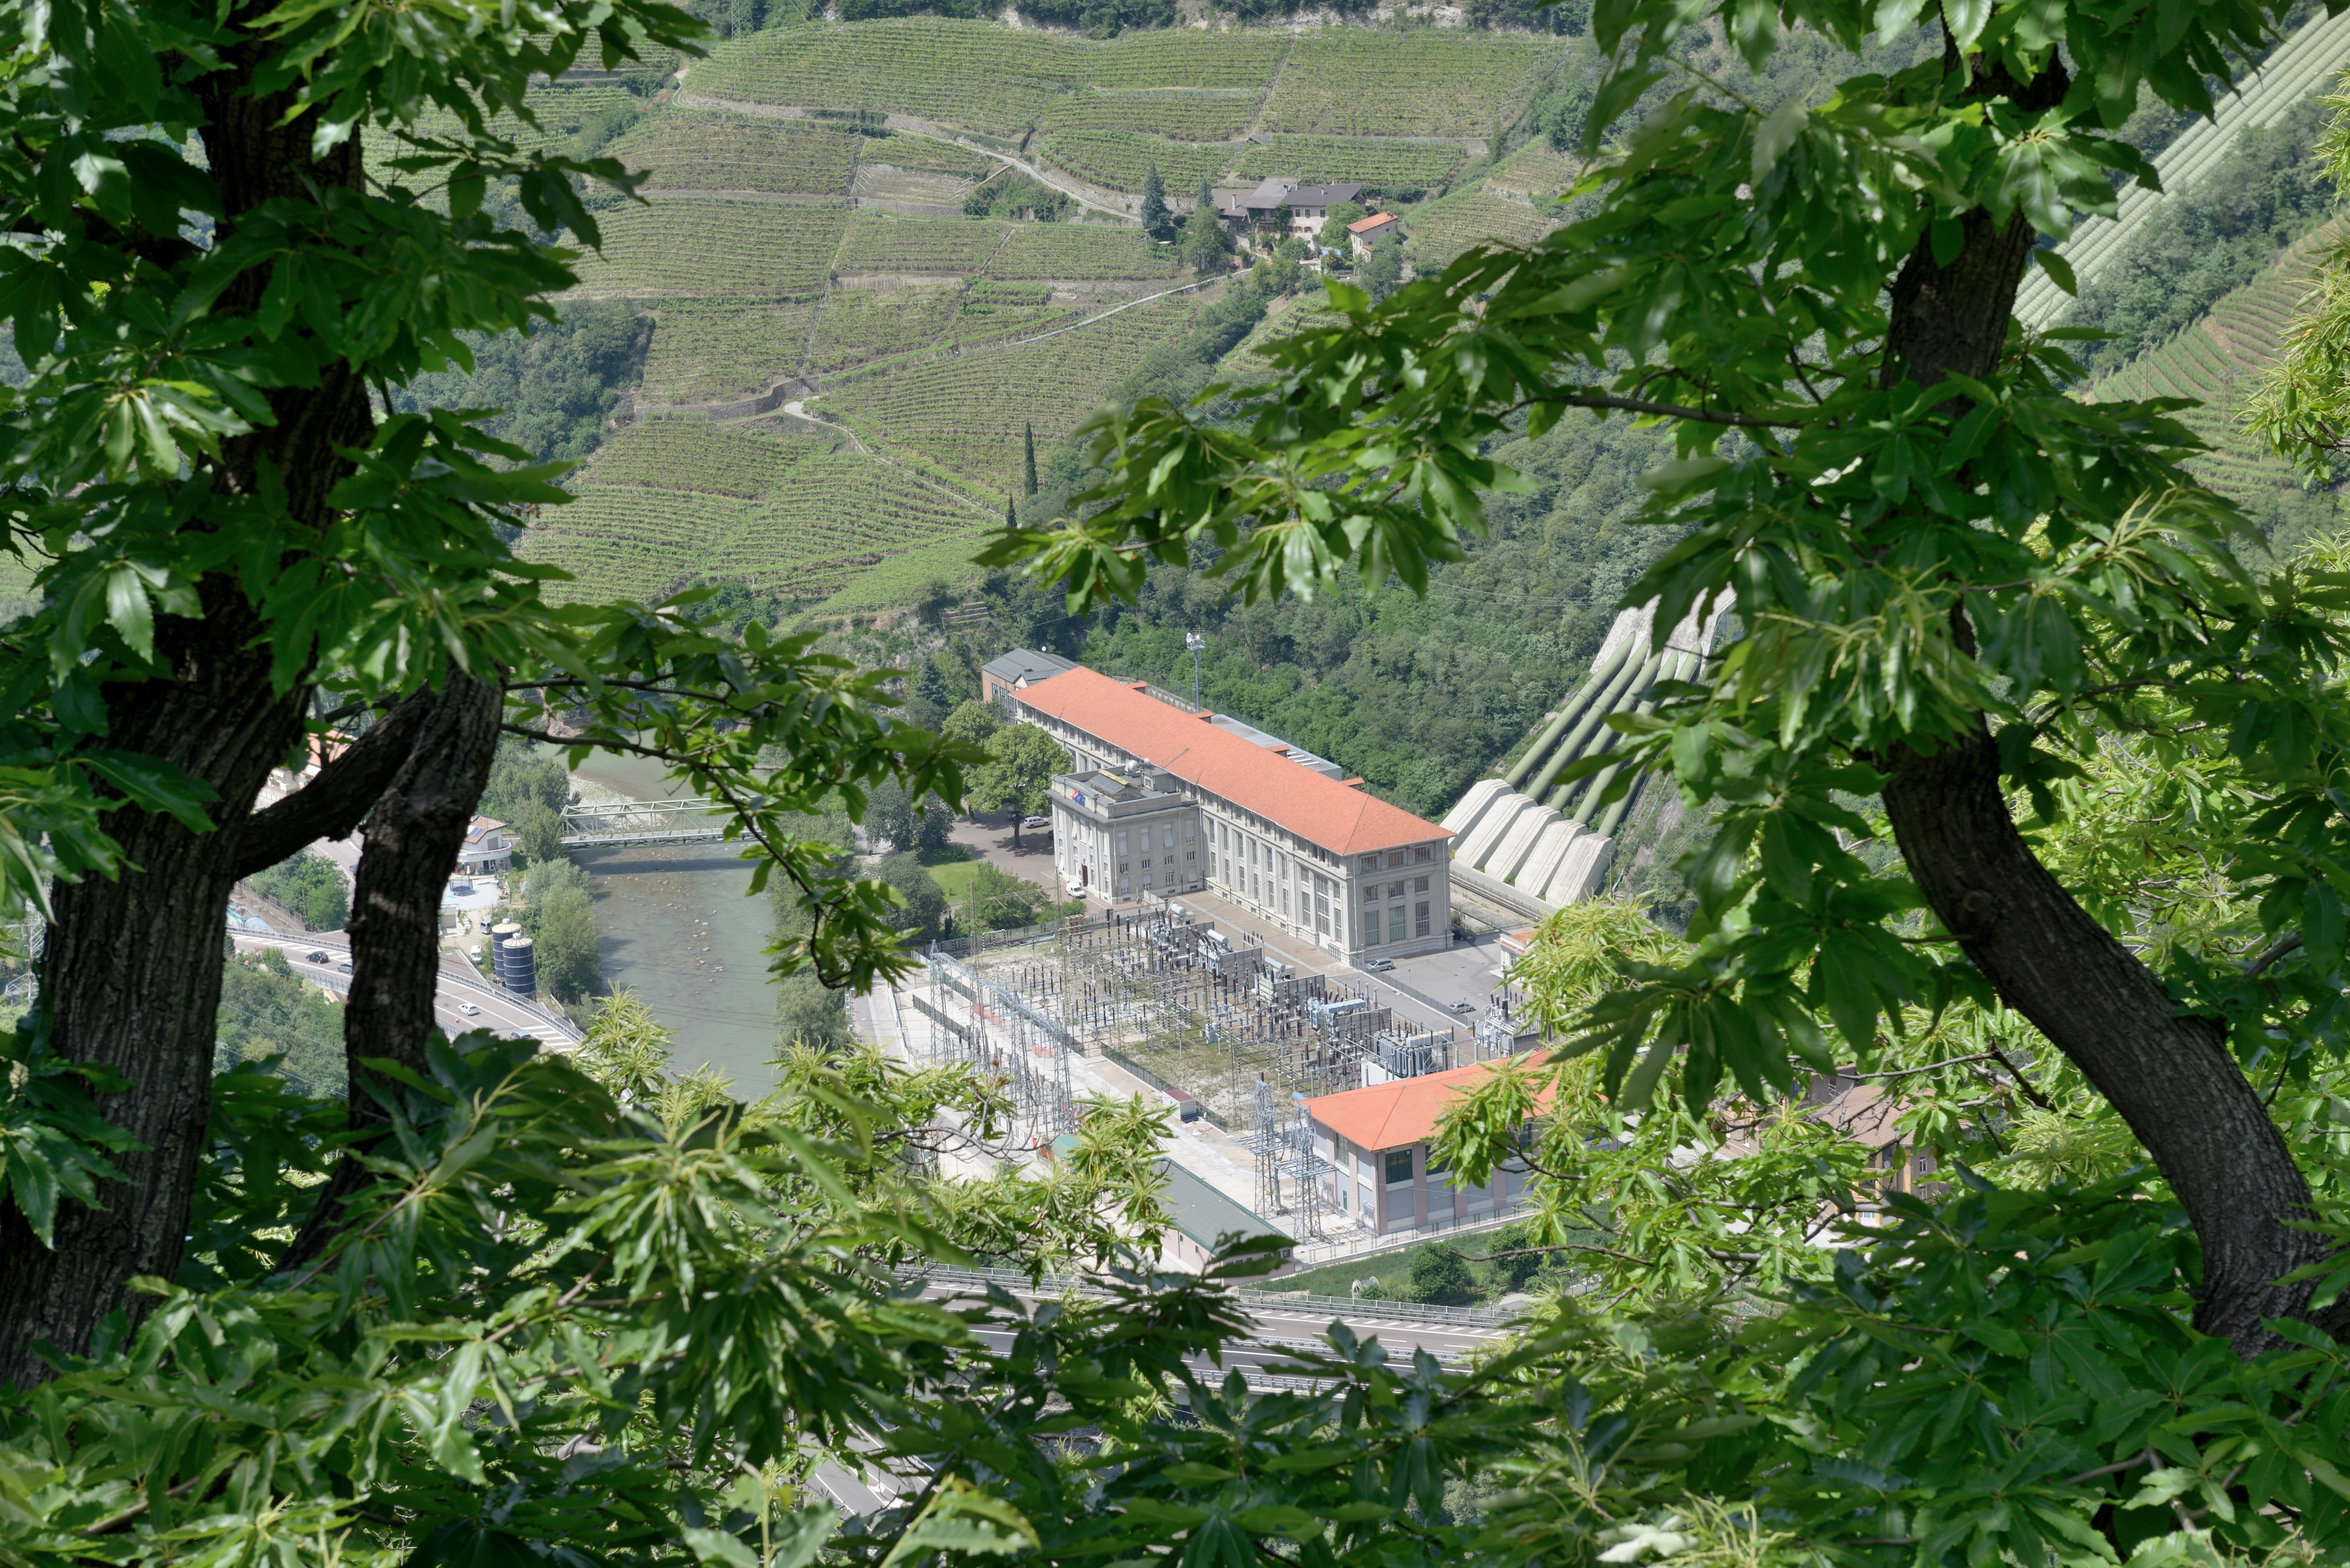 Wasserkraftwerk Kardaun from above